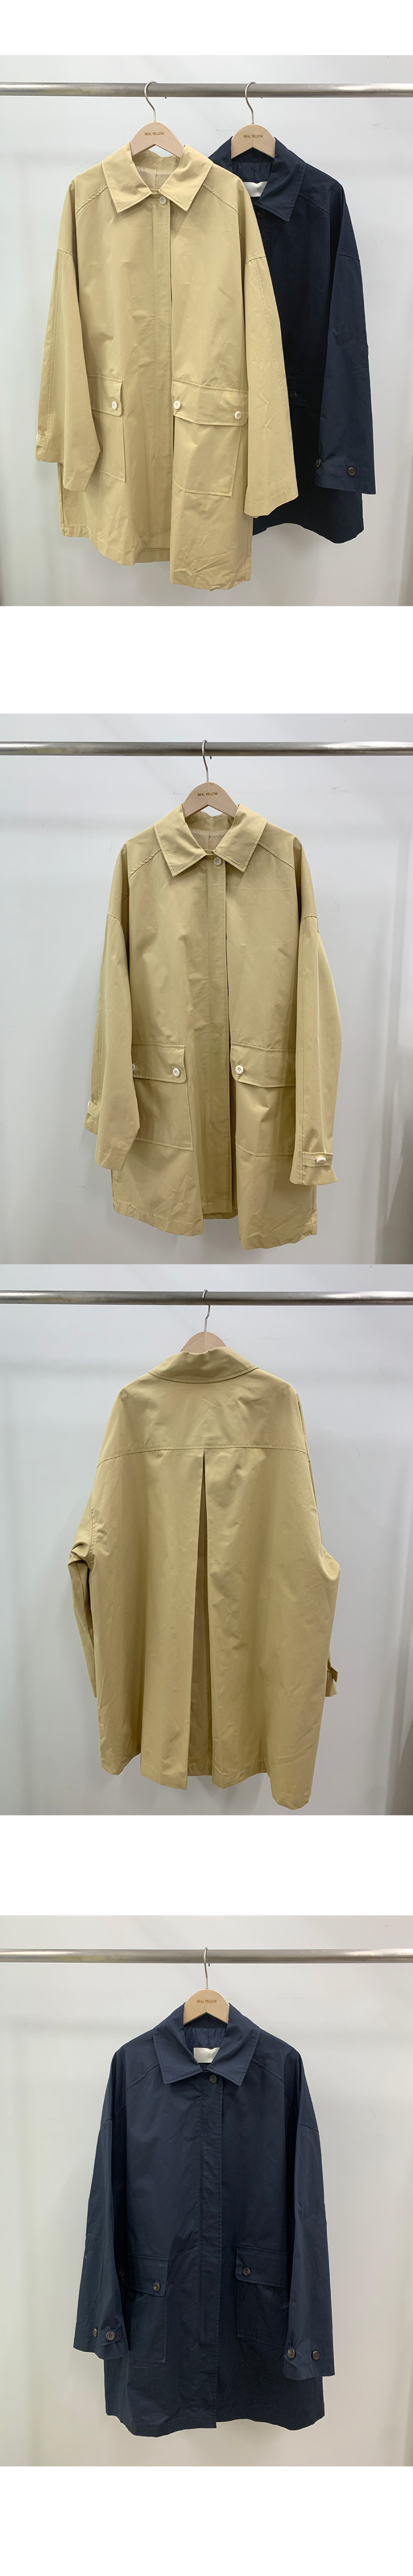 韓國服飾-KW-1026-050-韓國官網-外套